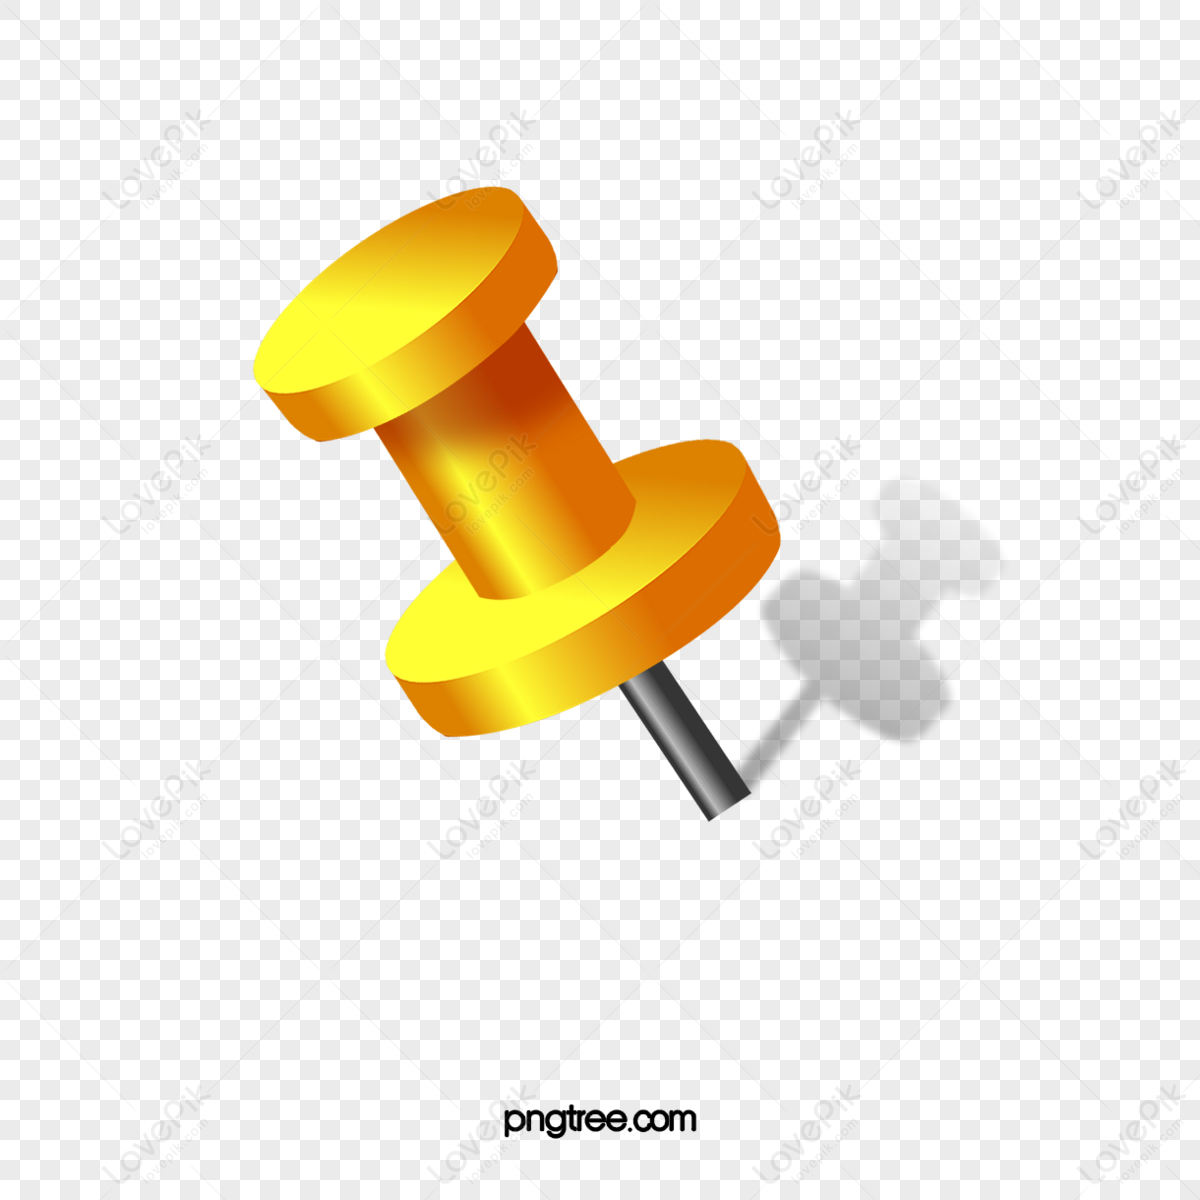 Free Vectors  Simple icon of push pin (thumb tack) yellow